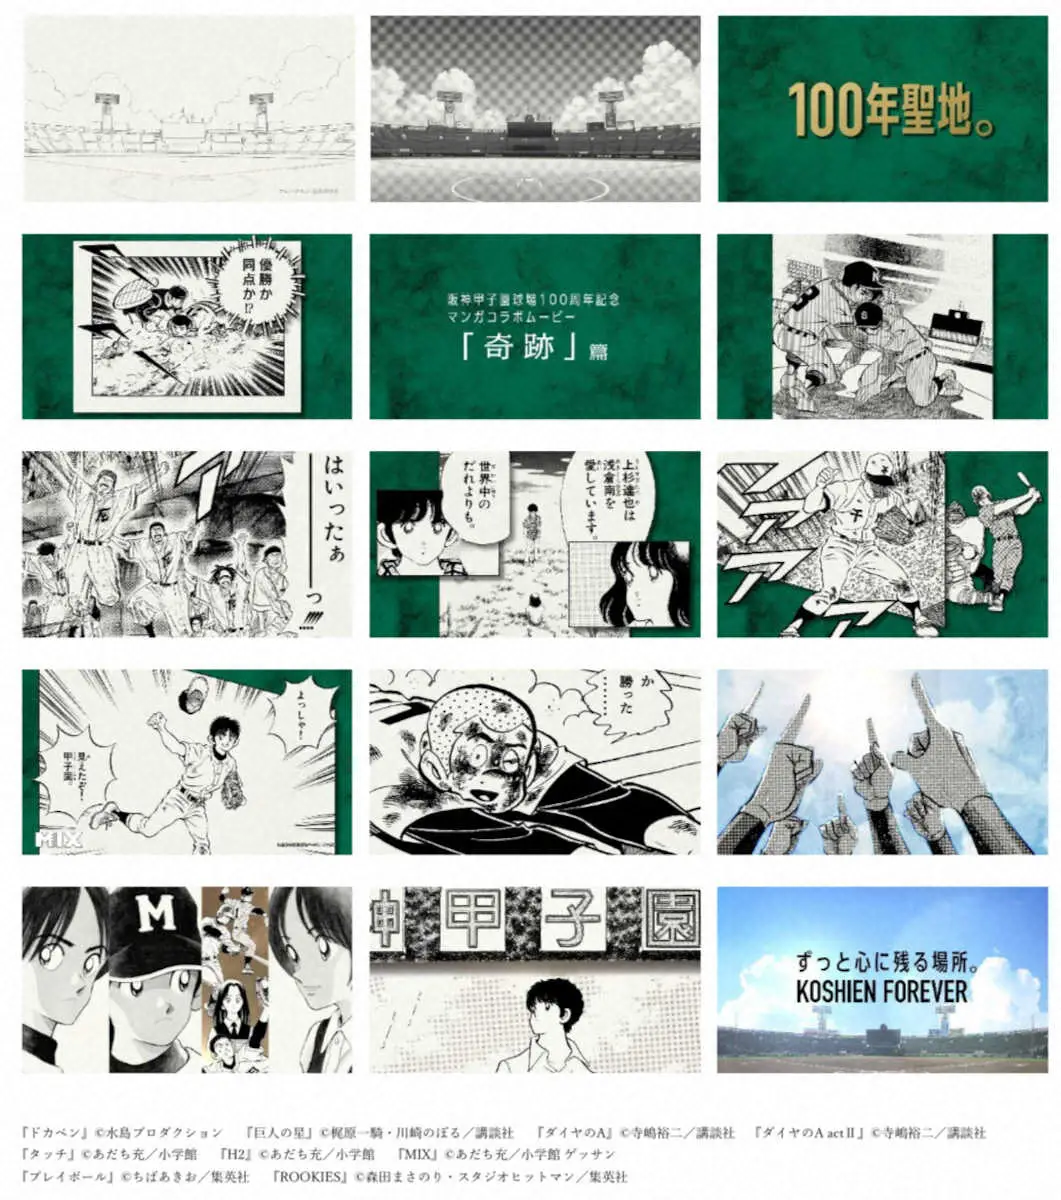 甲子園100周年マンガコラボ企画スペシャルムービー第七弾「奇跡」篇（阪神電鉄提供）